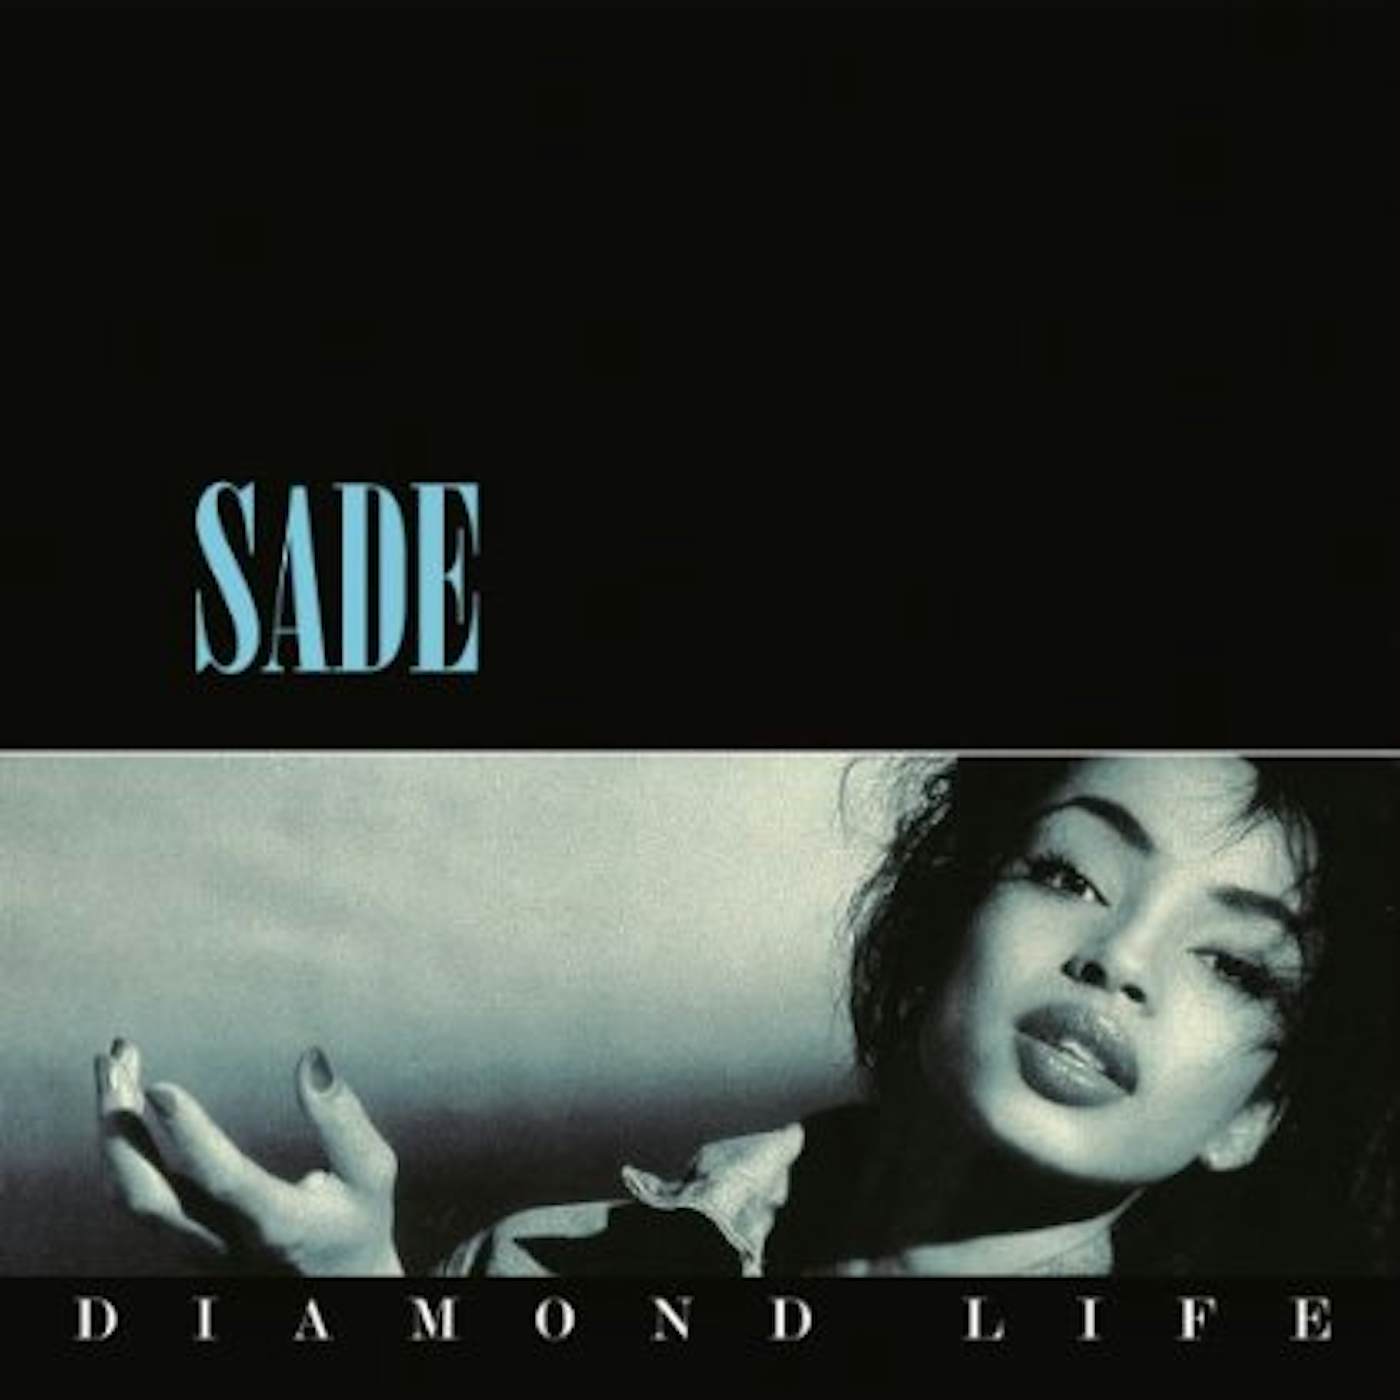 Sade Diamond Life Vinyl Record